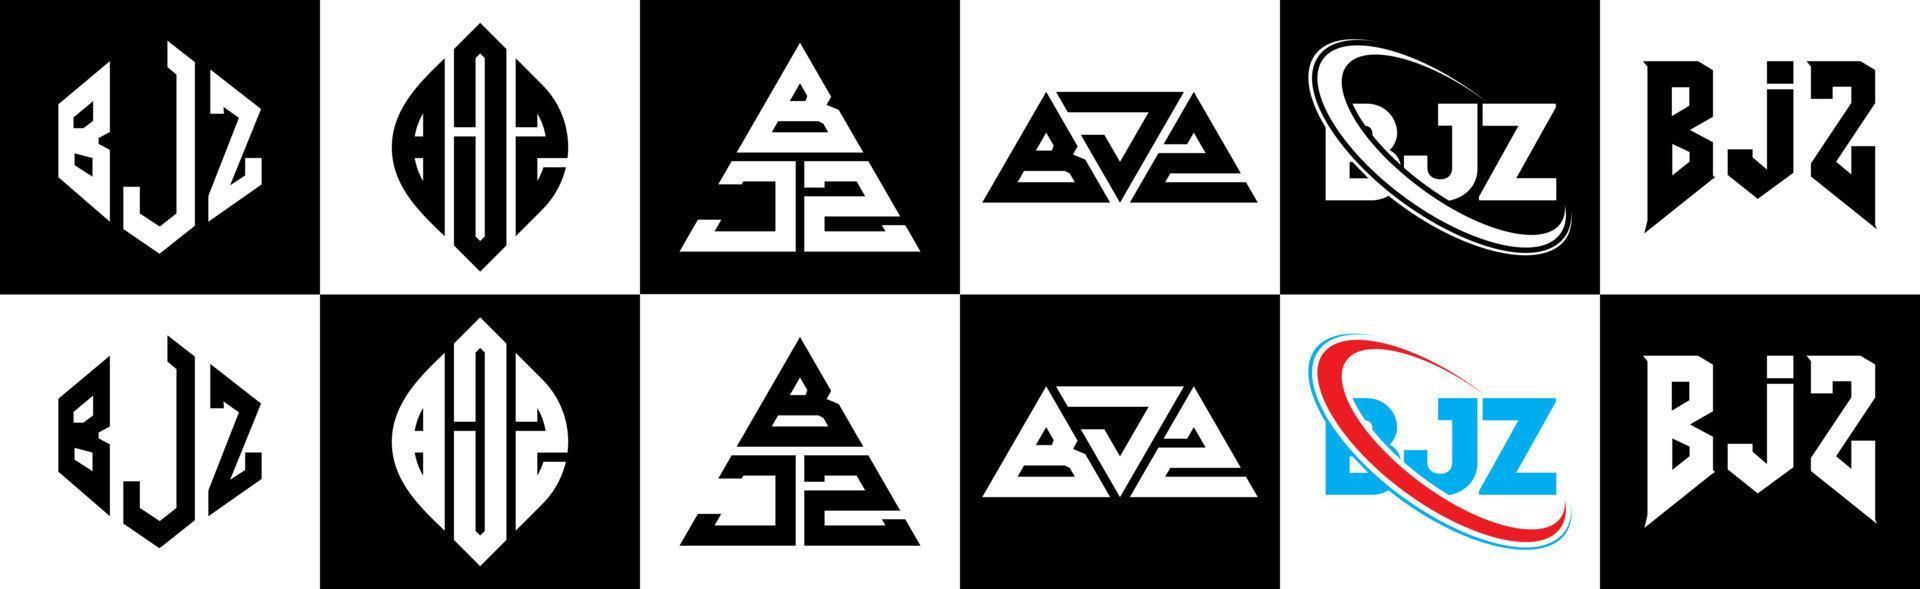 Diseño de logotipo de letra bjz en seis estilos. polígono bjz, círculo, triángulo, hexágono, estilo plano y simple con logotipo de letra de variación de color blanco y negro en una mesa de trabajo. bjz logotipo minimalista y clásico vector